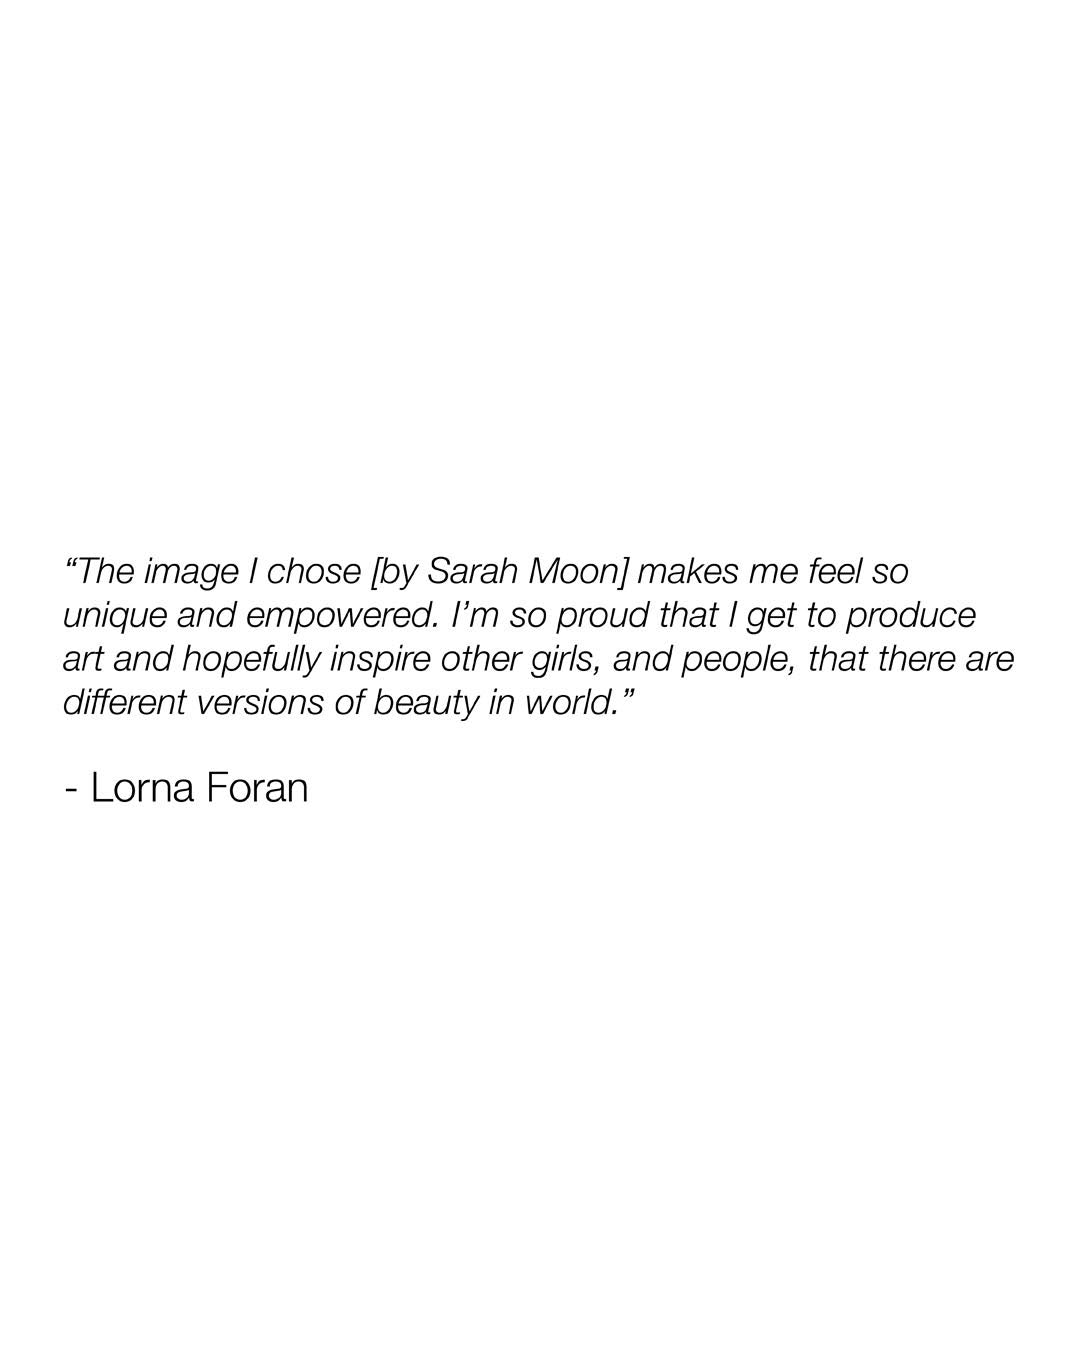 Lorna Foran